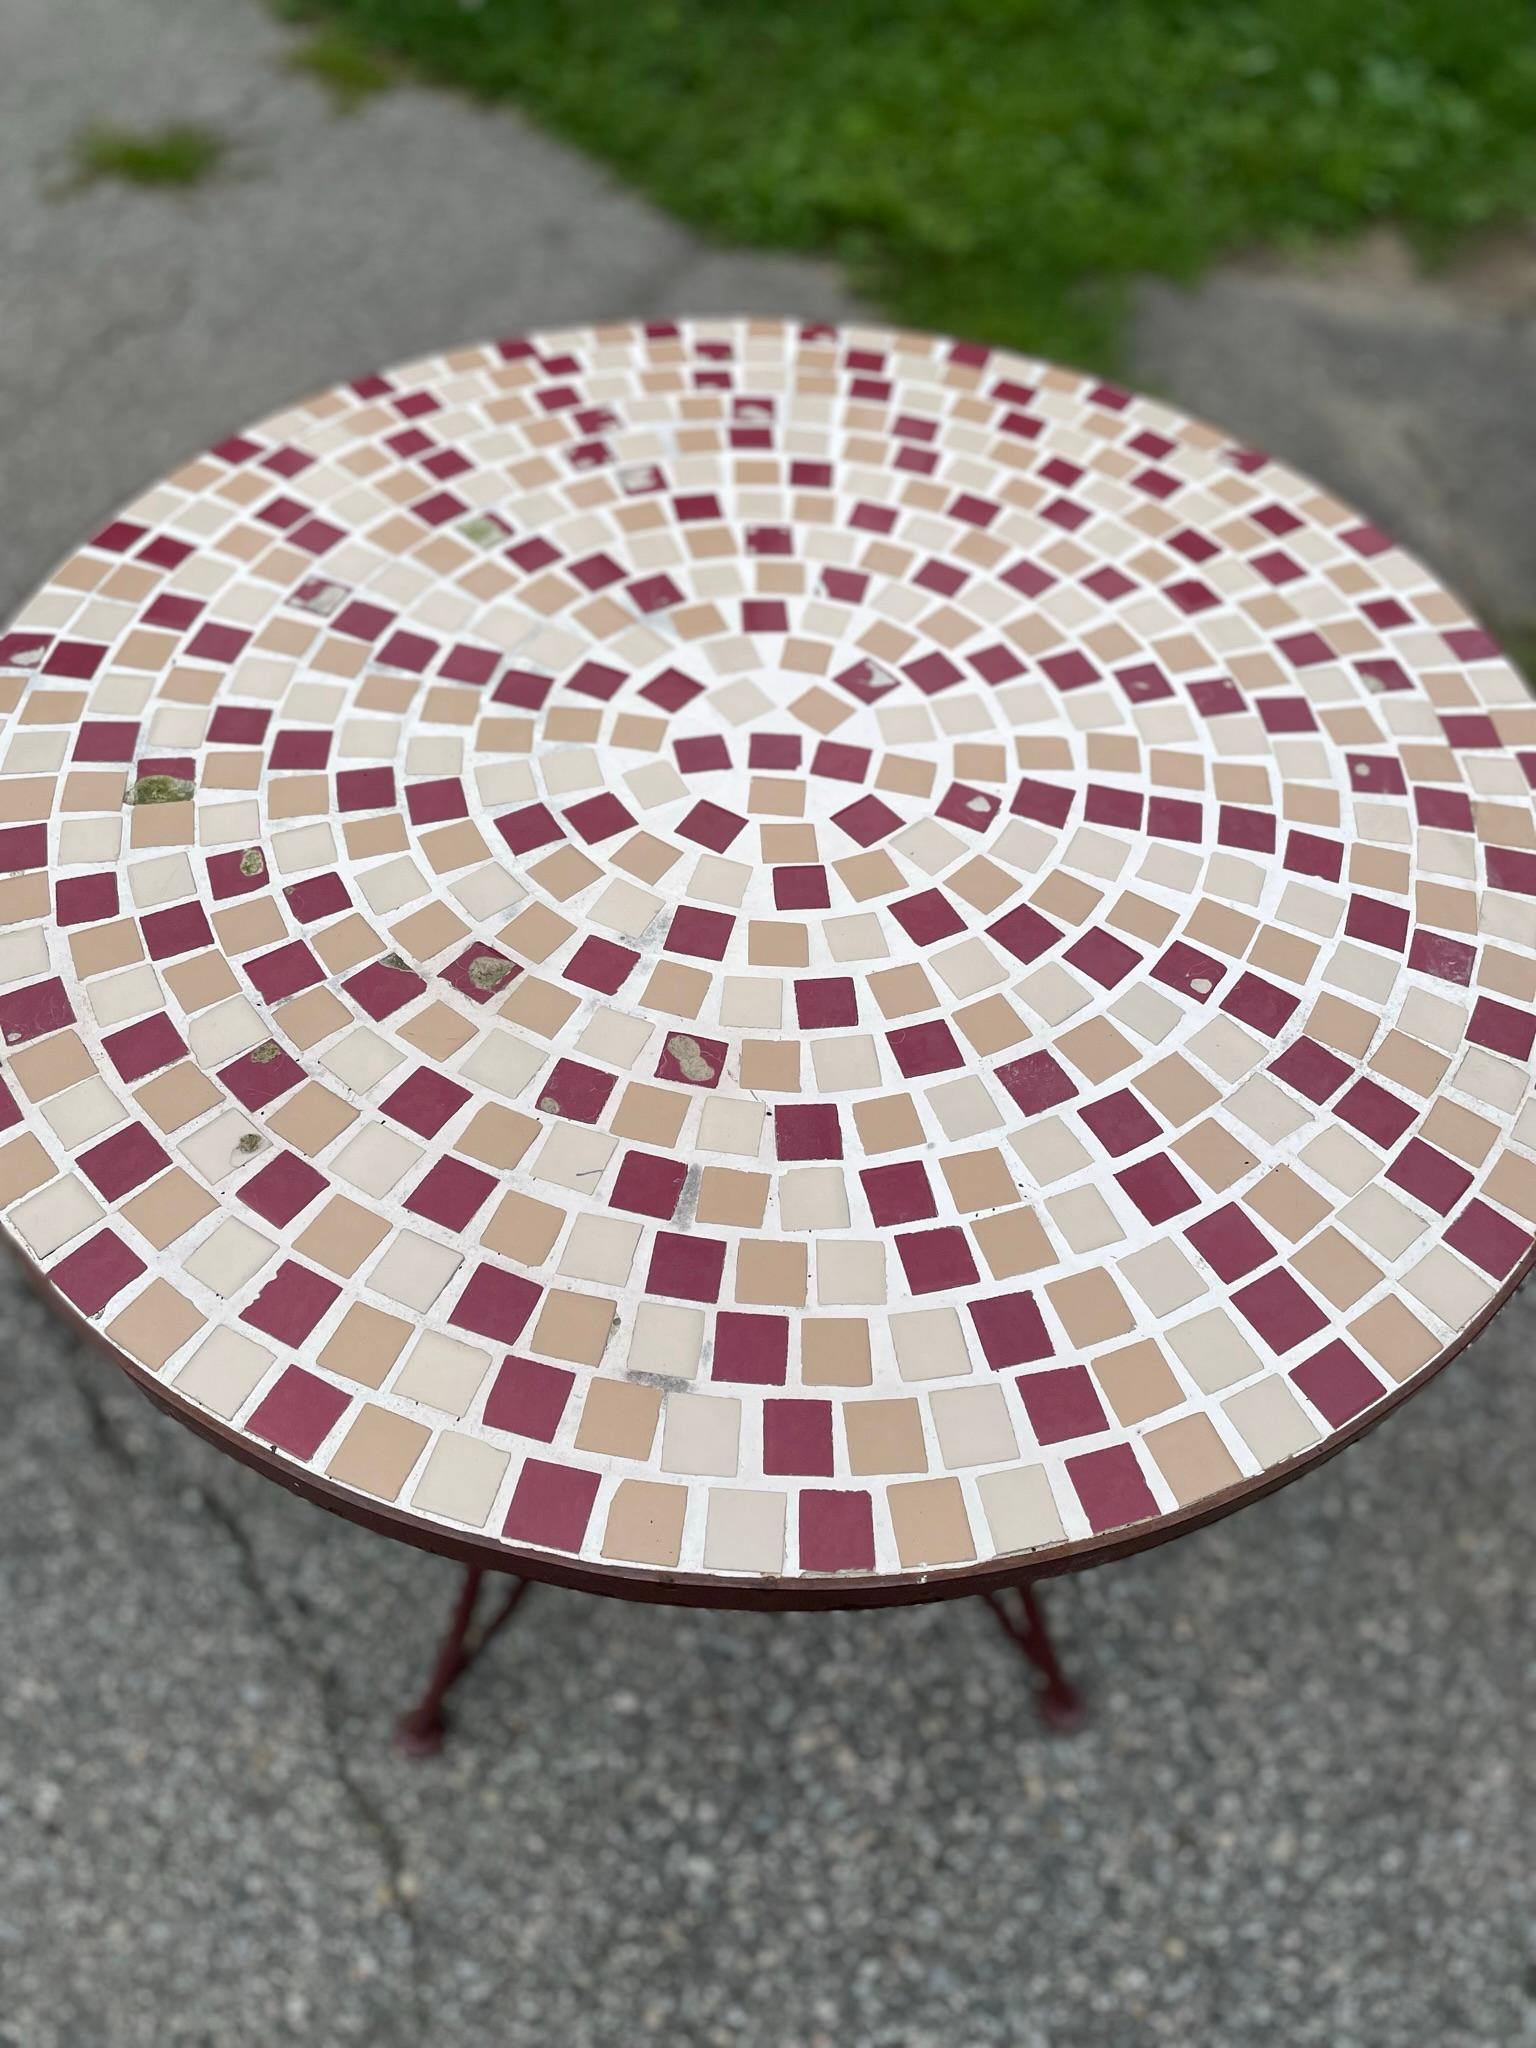 Vintage Mosaik ein Kachel Top Tisch

Perfekte Ergänzung für jedes Deck, jeden Garten, jede Terrasse oder jeden Innenhof. Geeignete Sitzgelegenheit für 2 Personen. Sockel aus Schmiedeeisen befestigt.

Lieferung innerhalb von 2 Wochen für die Ostküste